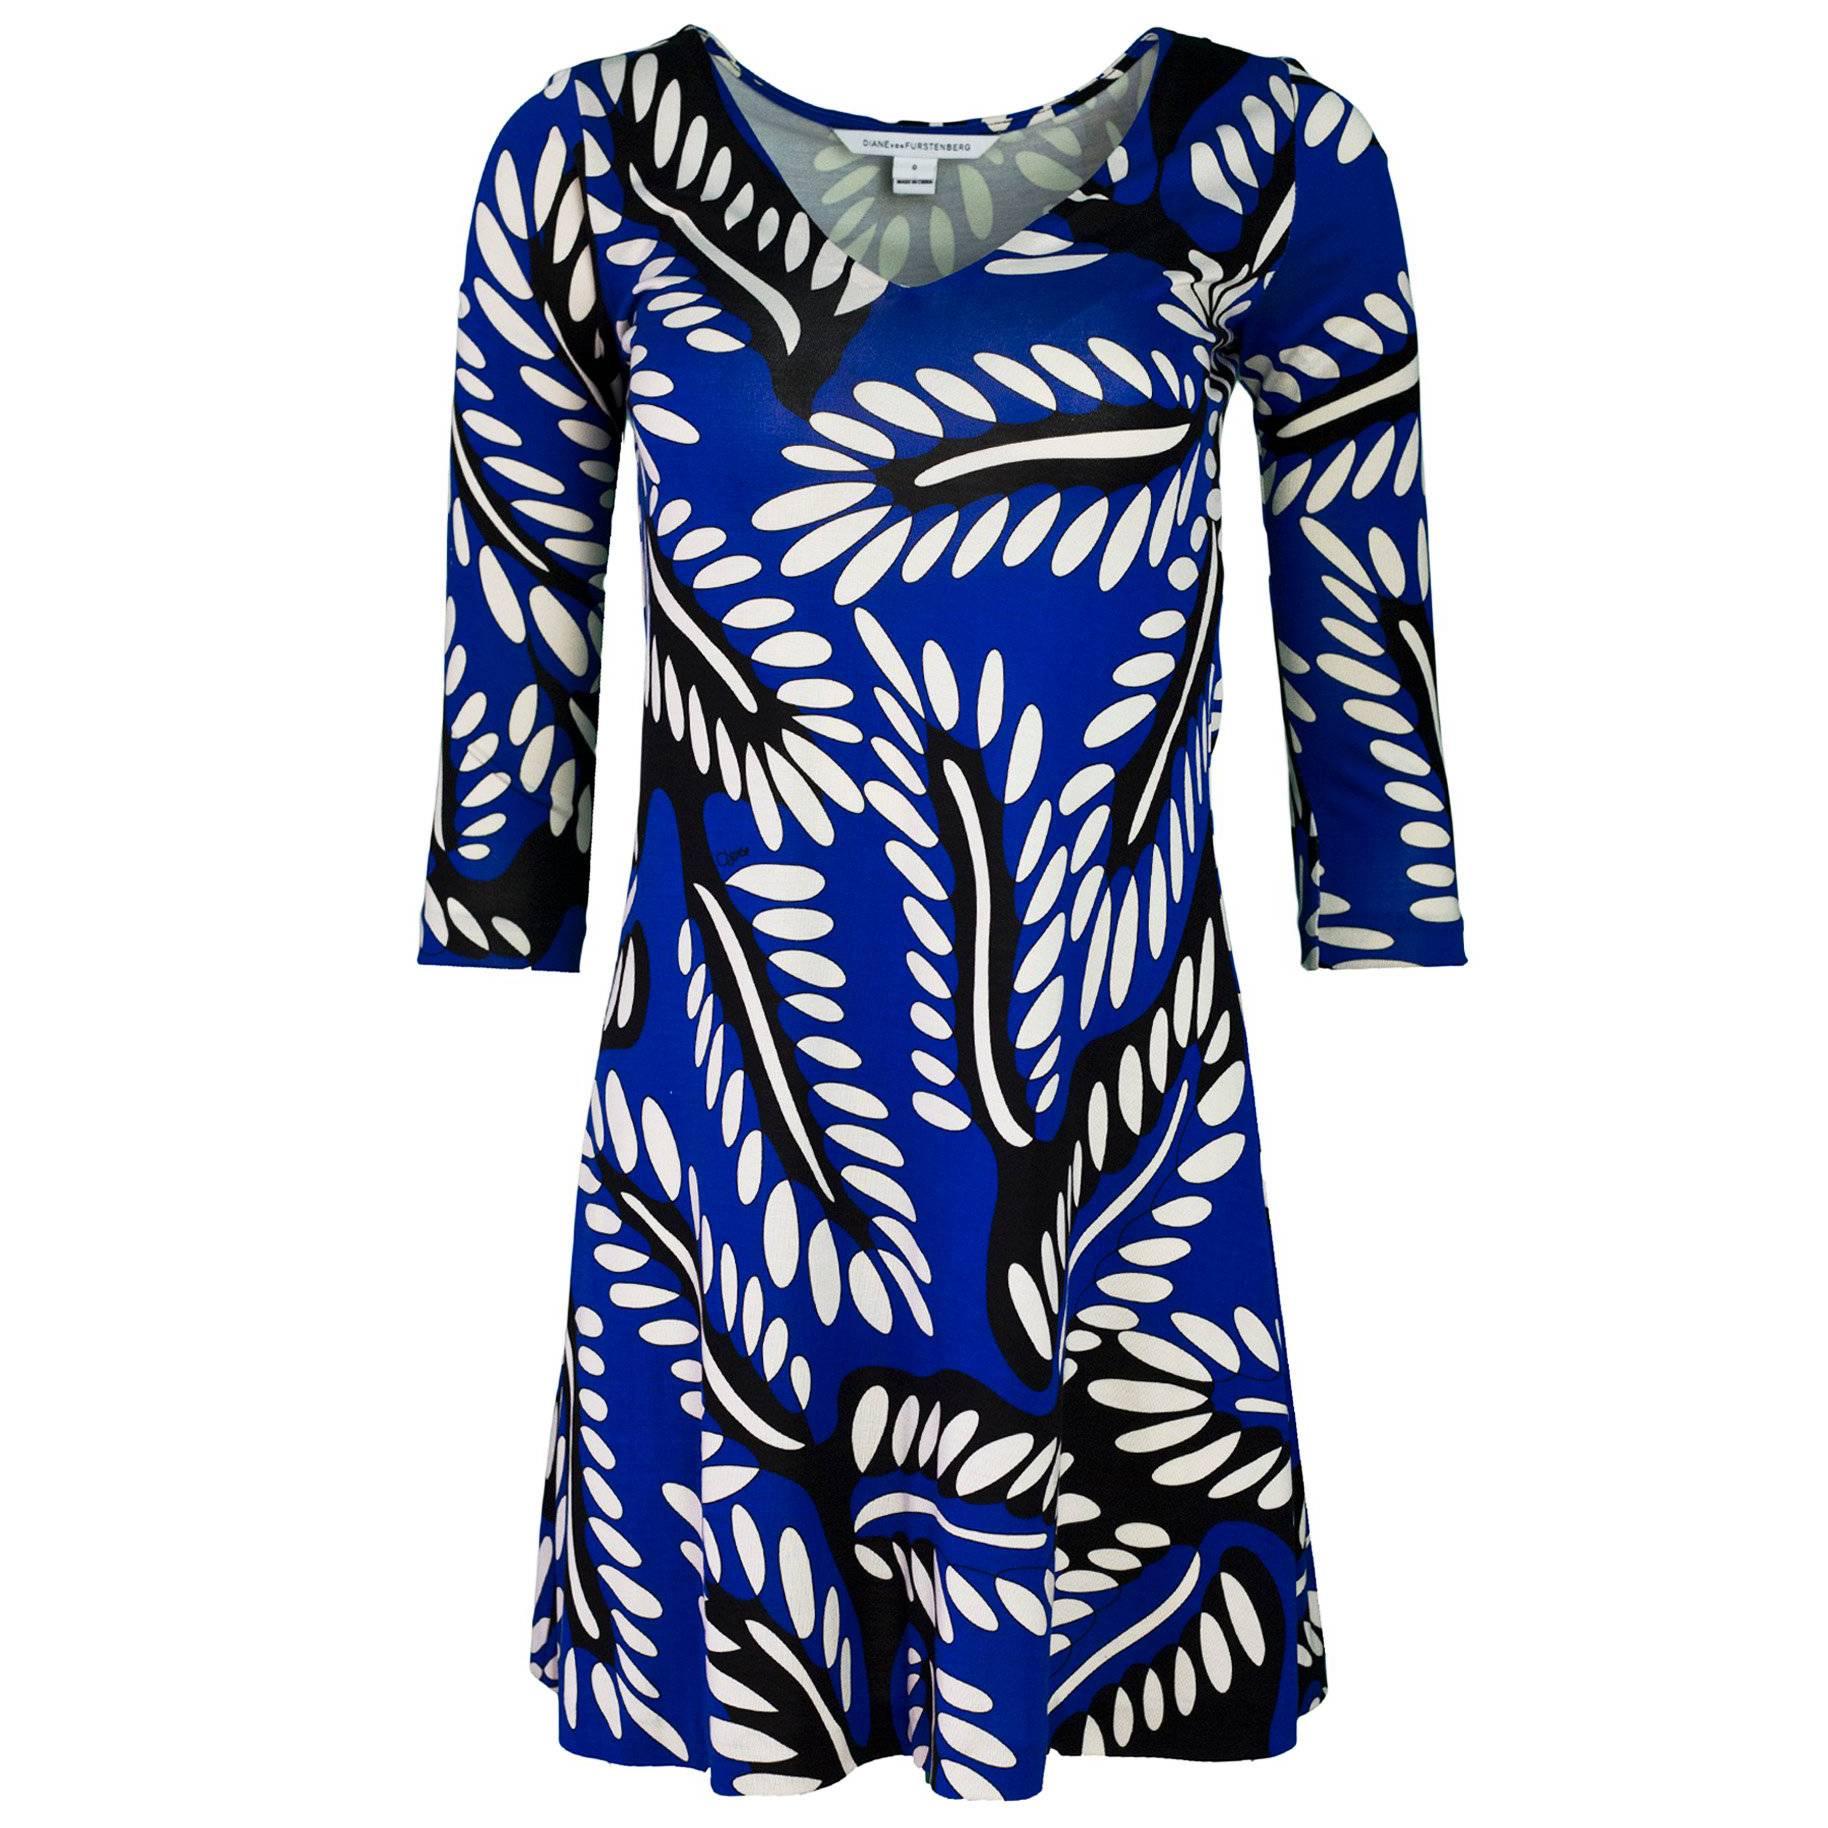 Diane von Furstenberg Blue, Black & White Silk Print Dress Sz 0